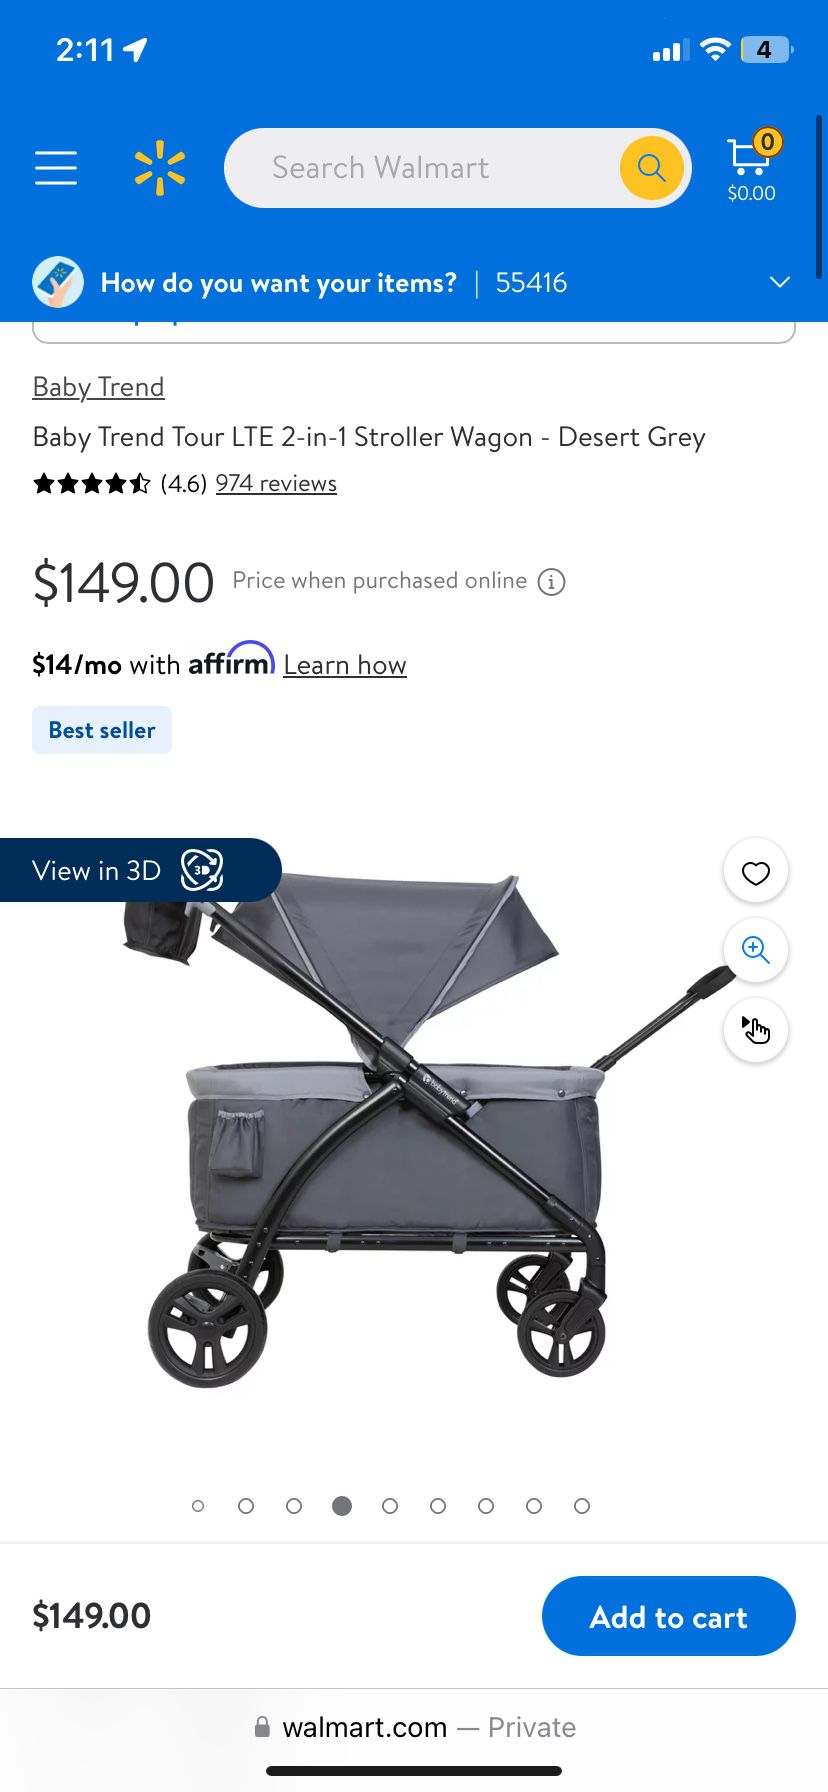 baby stroller 3 in 1